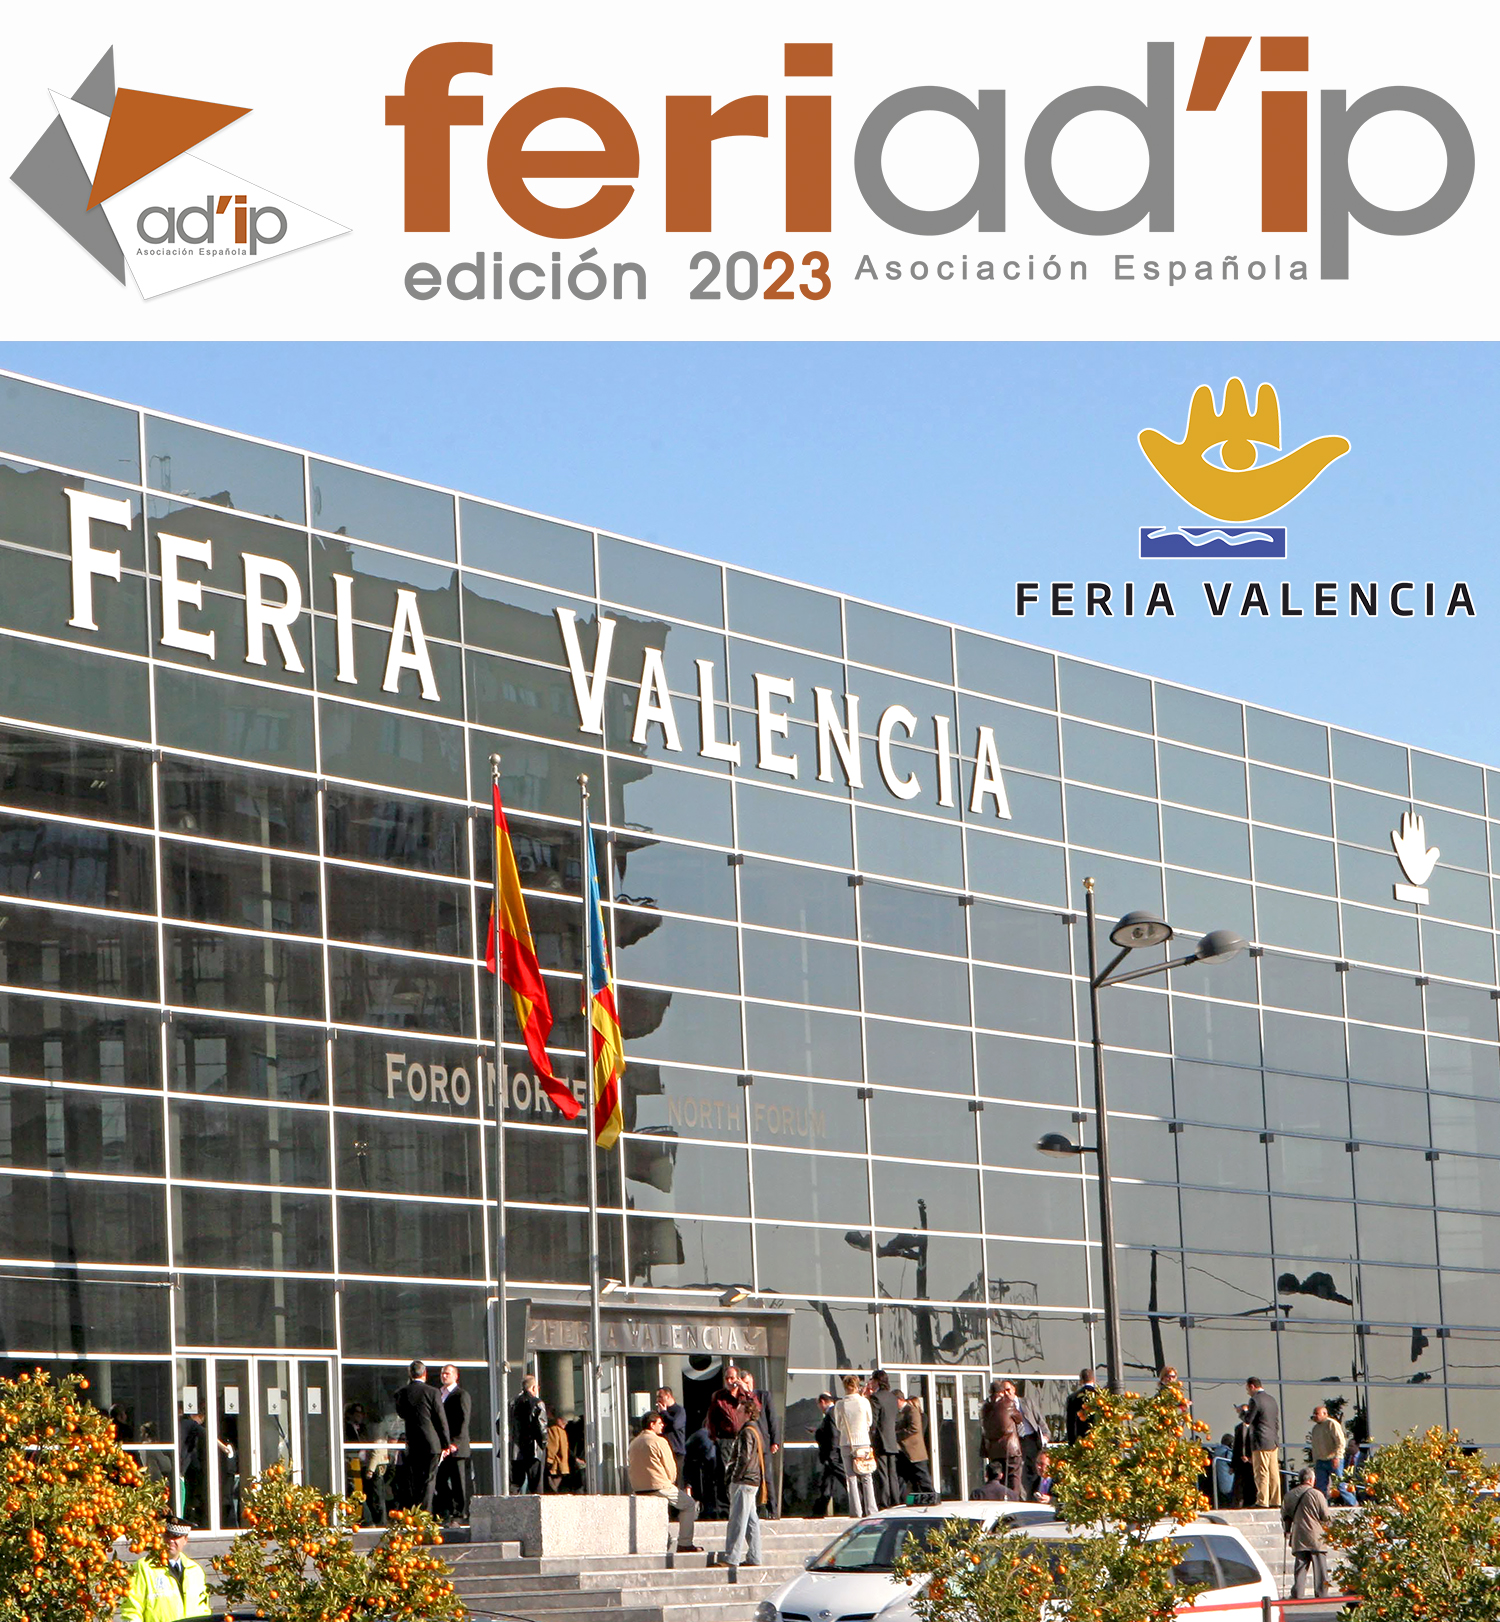 IMAGEN-FERIAD'IP-2023-FERIA-VALENCIA-Página-Principal